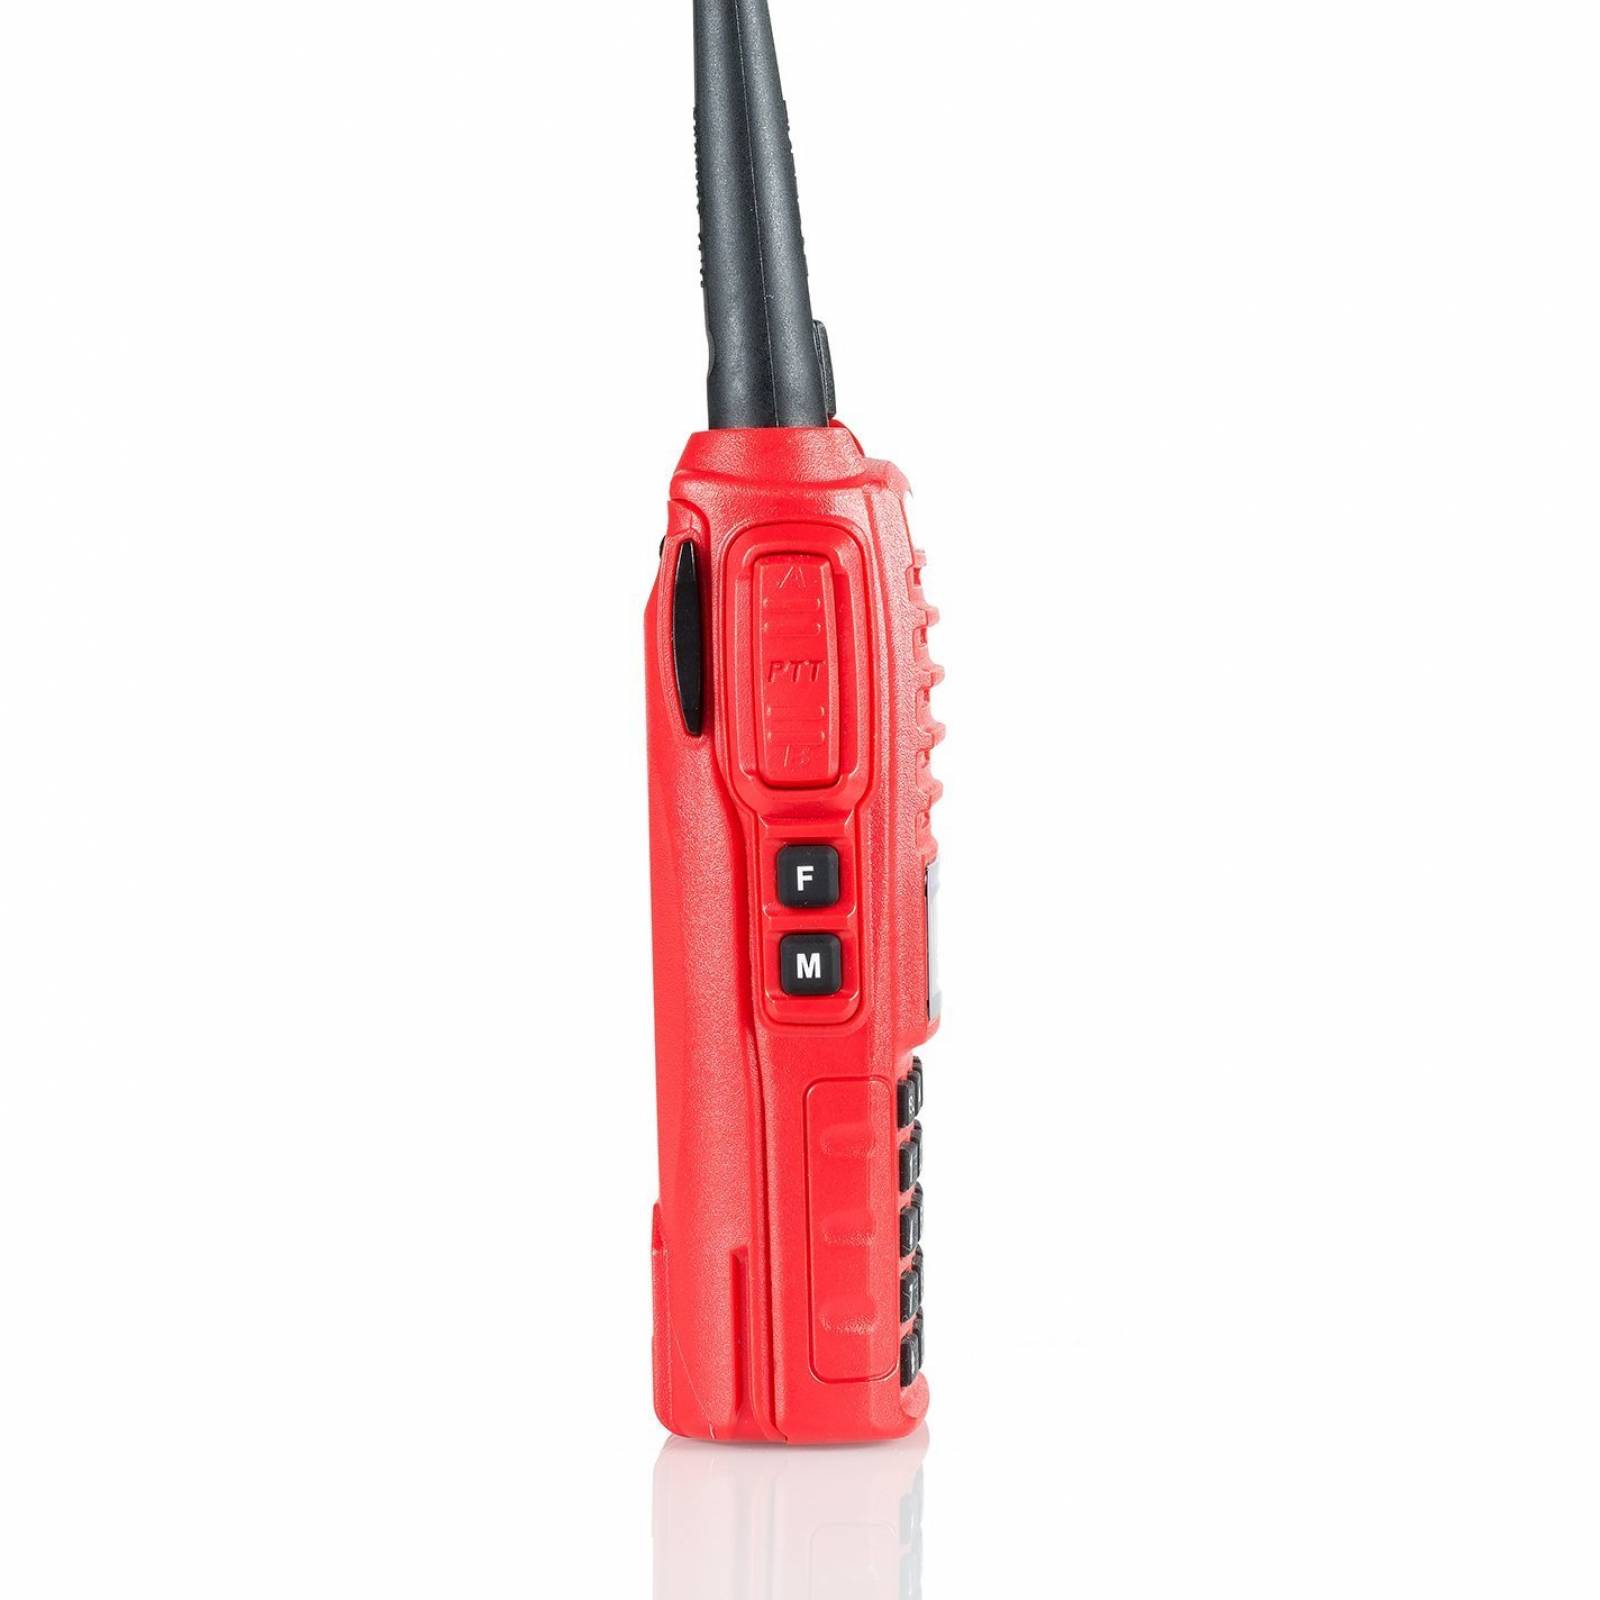 BaoFeng UV-82HP rojo alta potencia doble banda Radio: - Rojo